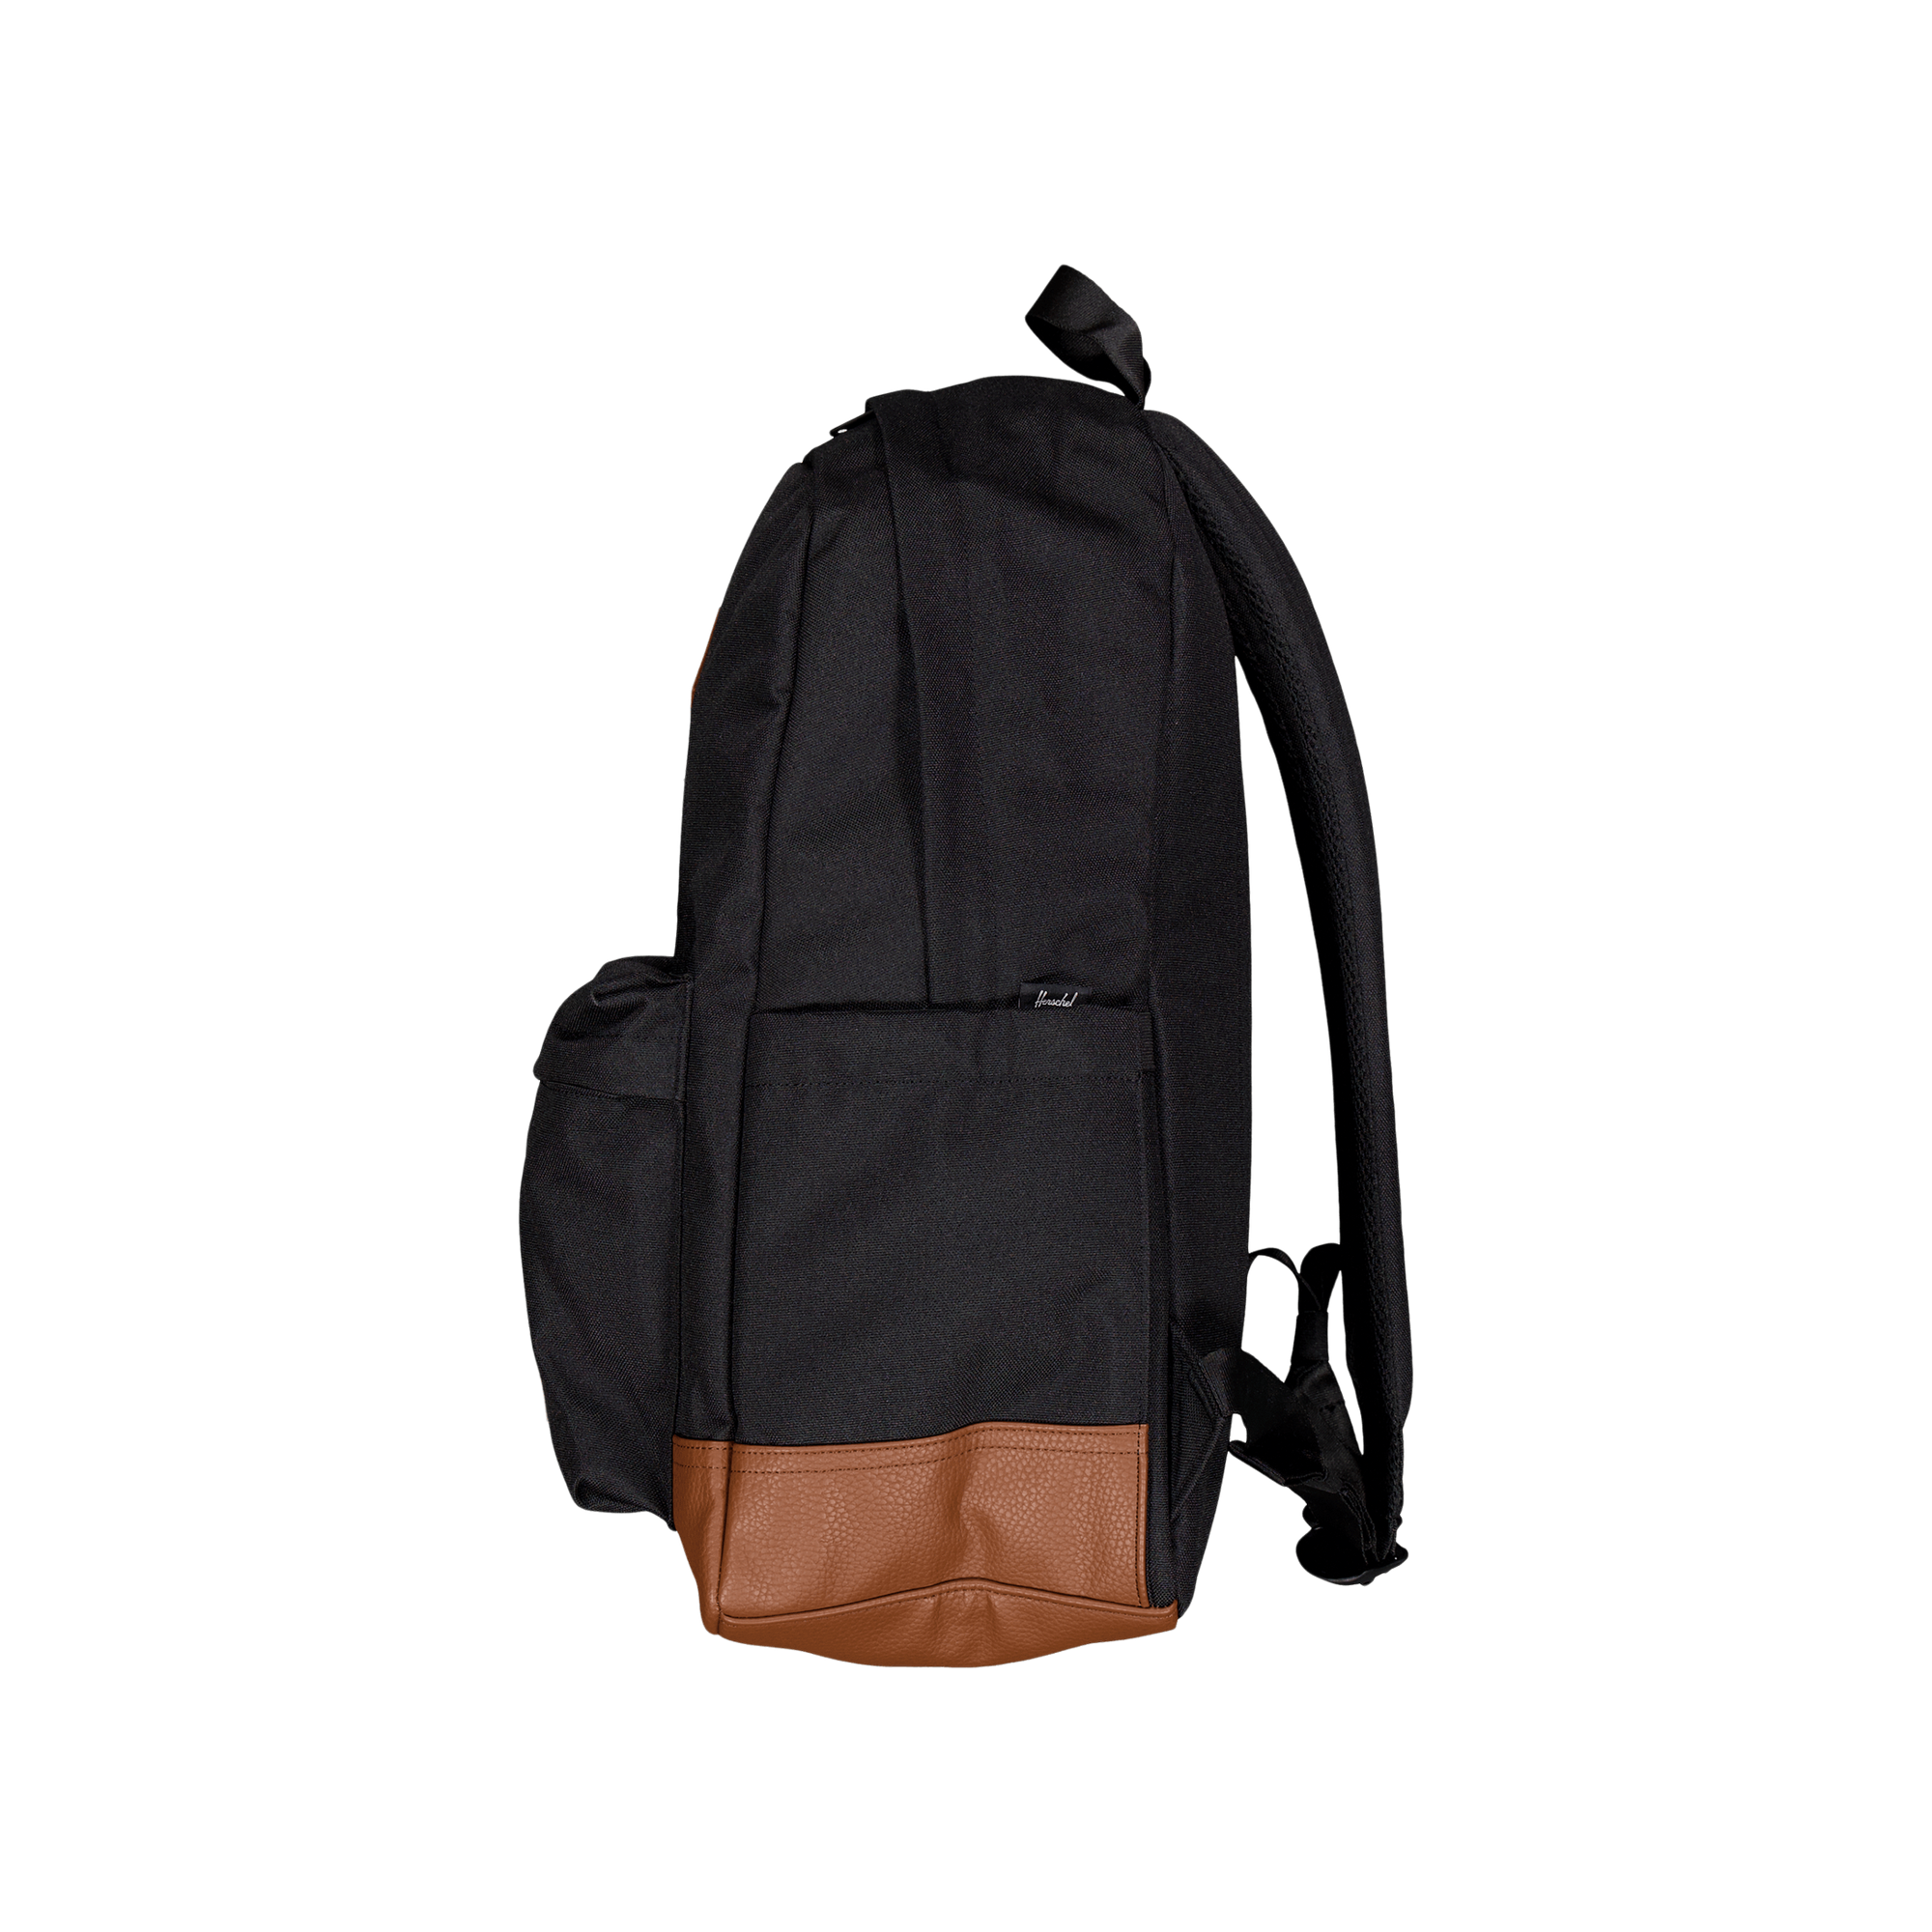 Herschel Heritage Backpack Black/tan